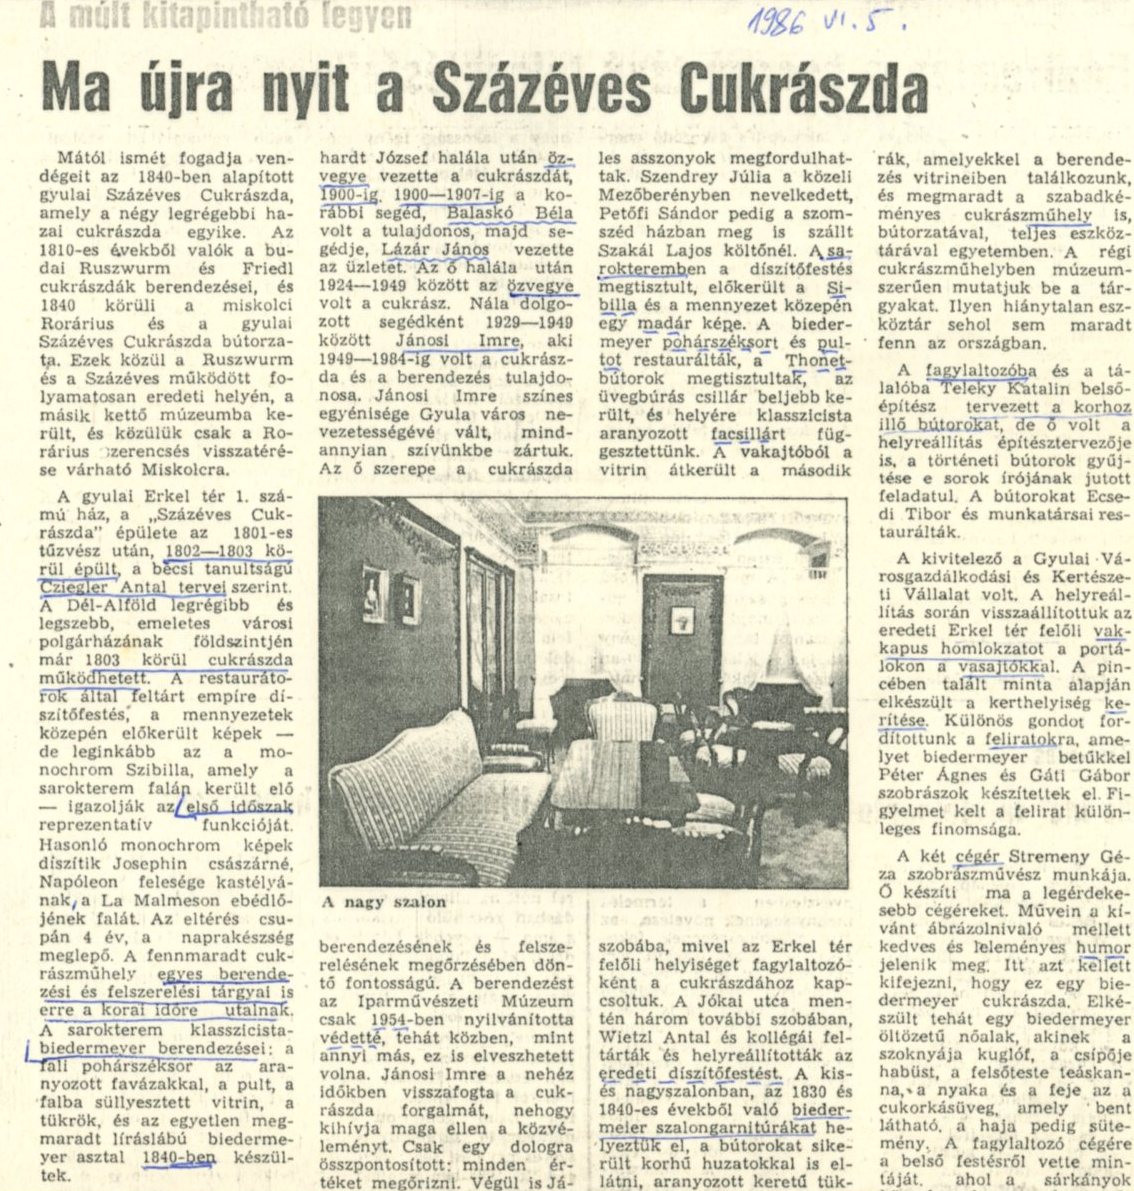 Xerox másolat újságlapról (Erkel Ferenc Múzeum CC BY-NC-SA)